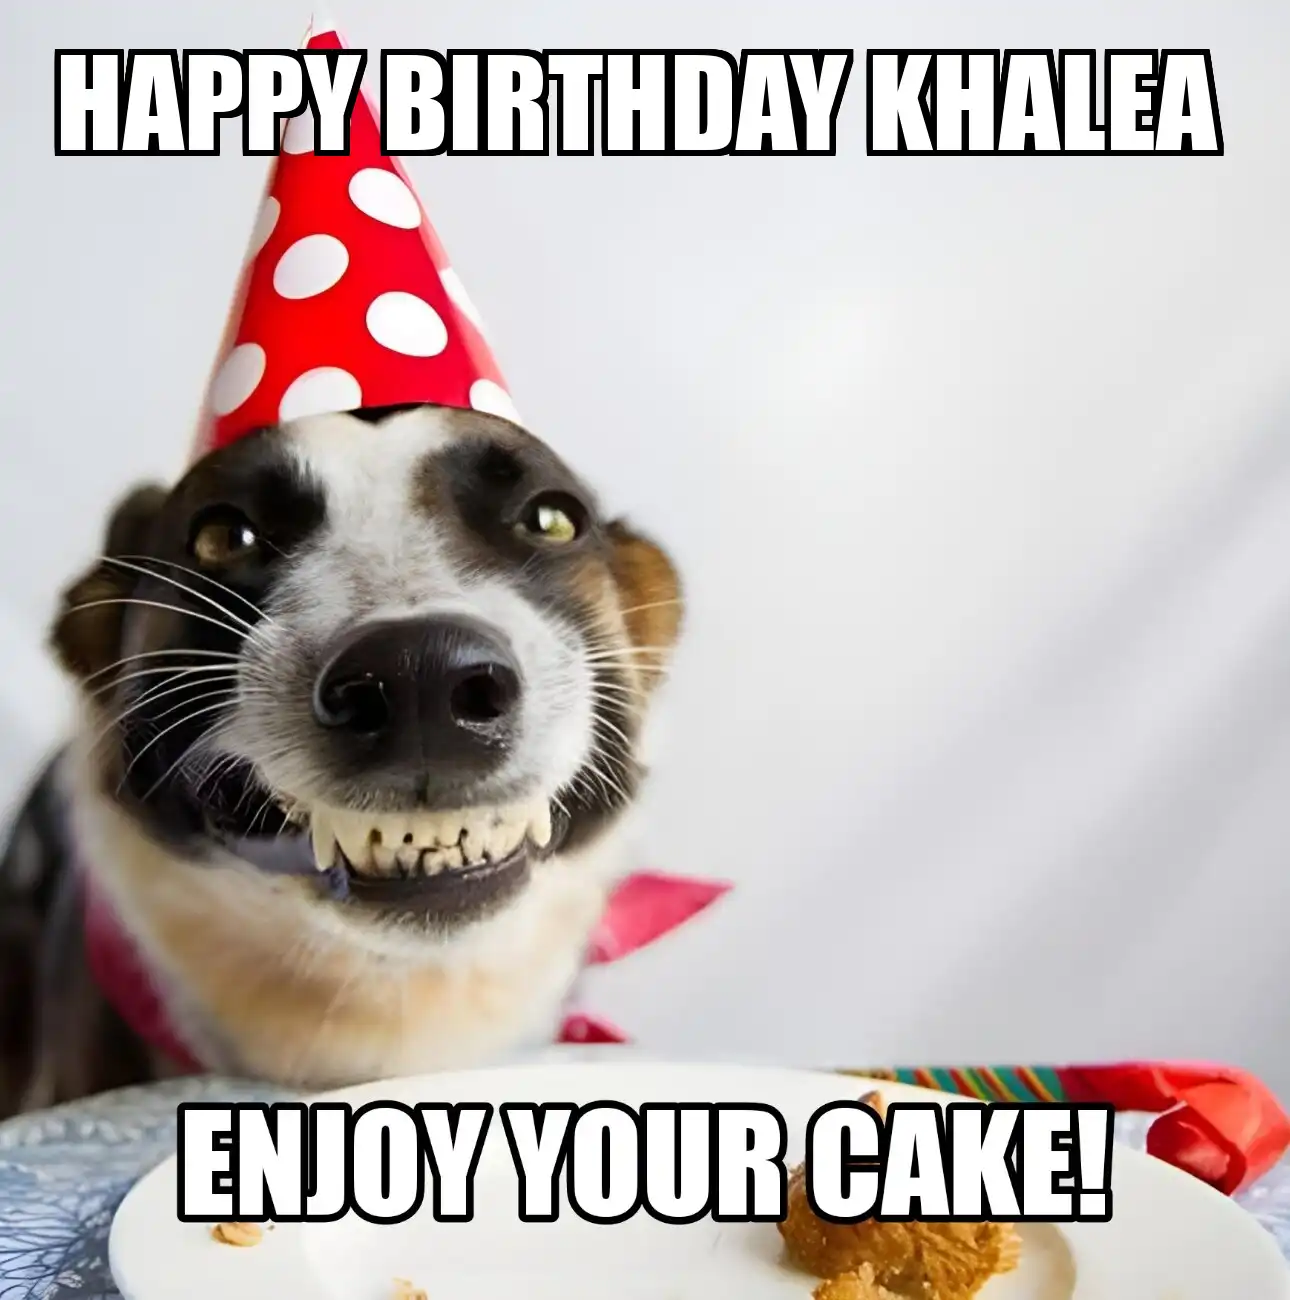 Happy Birthday Khalea Enjoy Your Cake Dog Meme